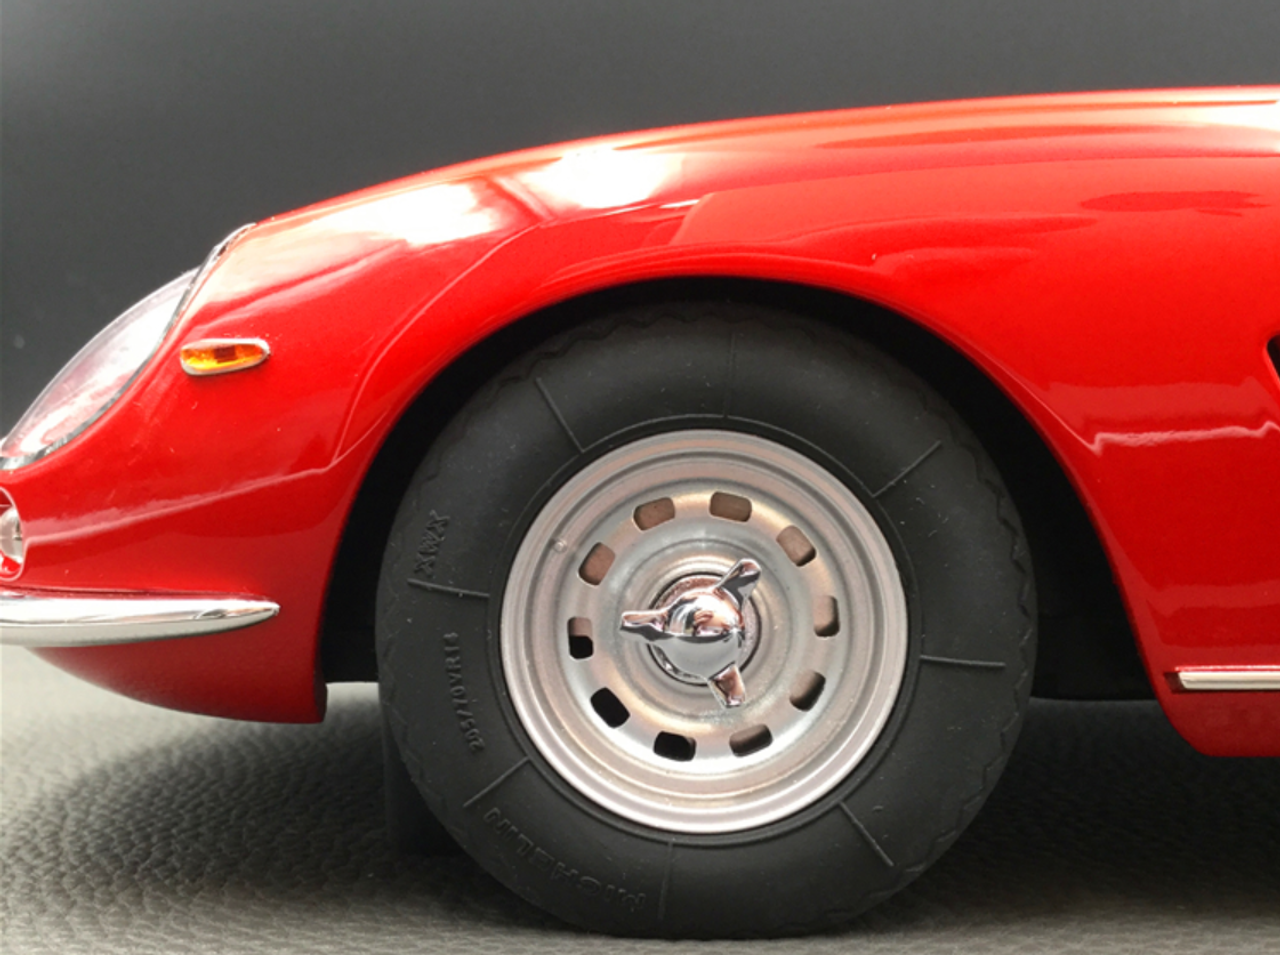 1/12 Top Marques Ferrari 275 GTB/4 (Red) Car Model Limited